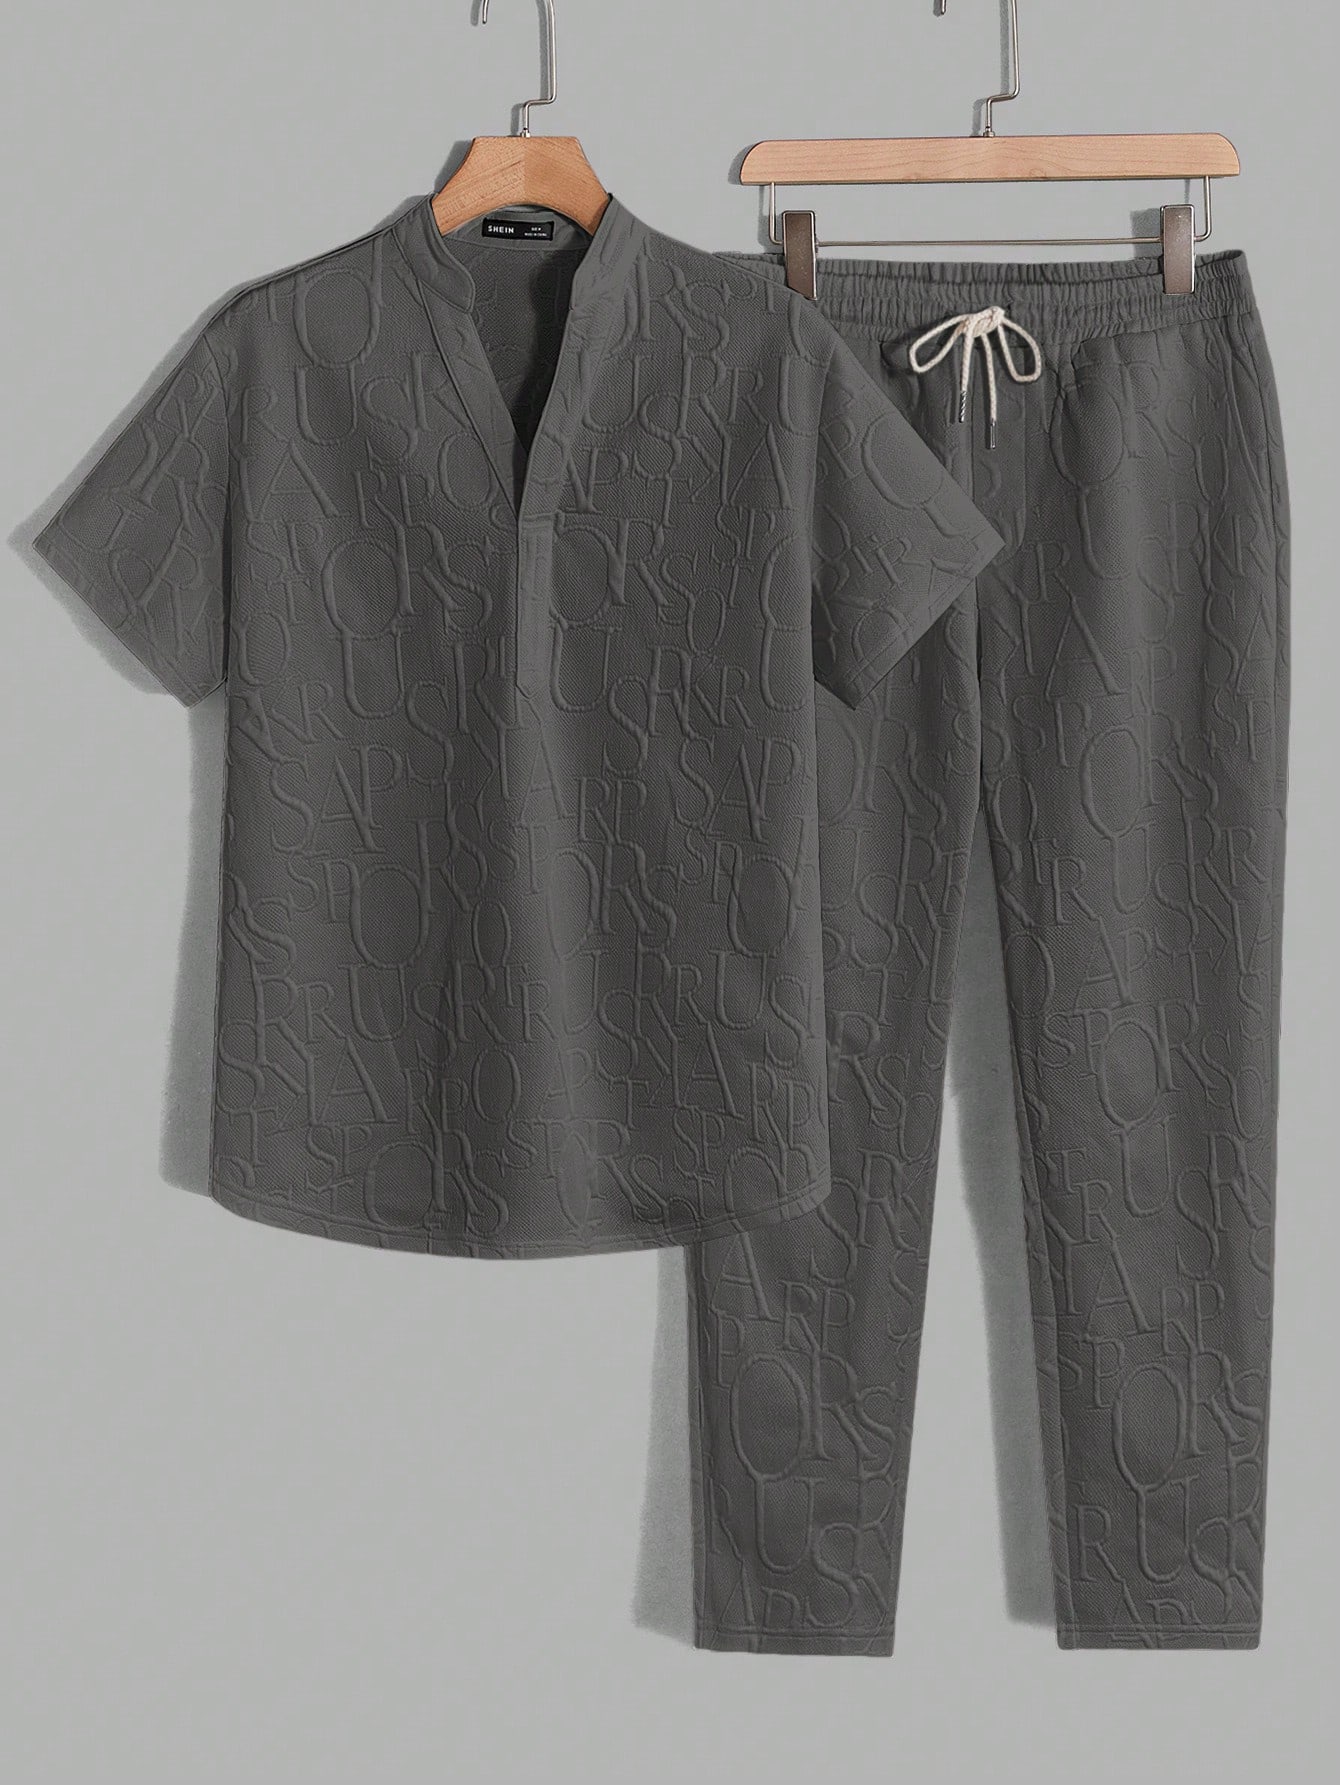 Мужская повседневная трикотажная рубашка-поло и брюки с тиснением букв Manfinity Homme, темно-серый